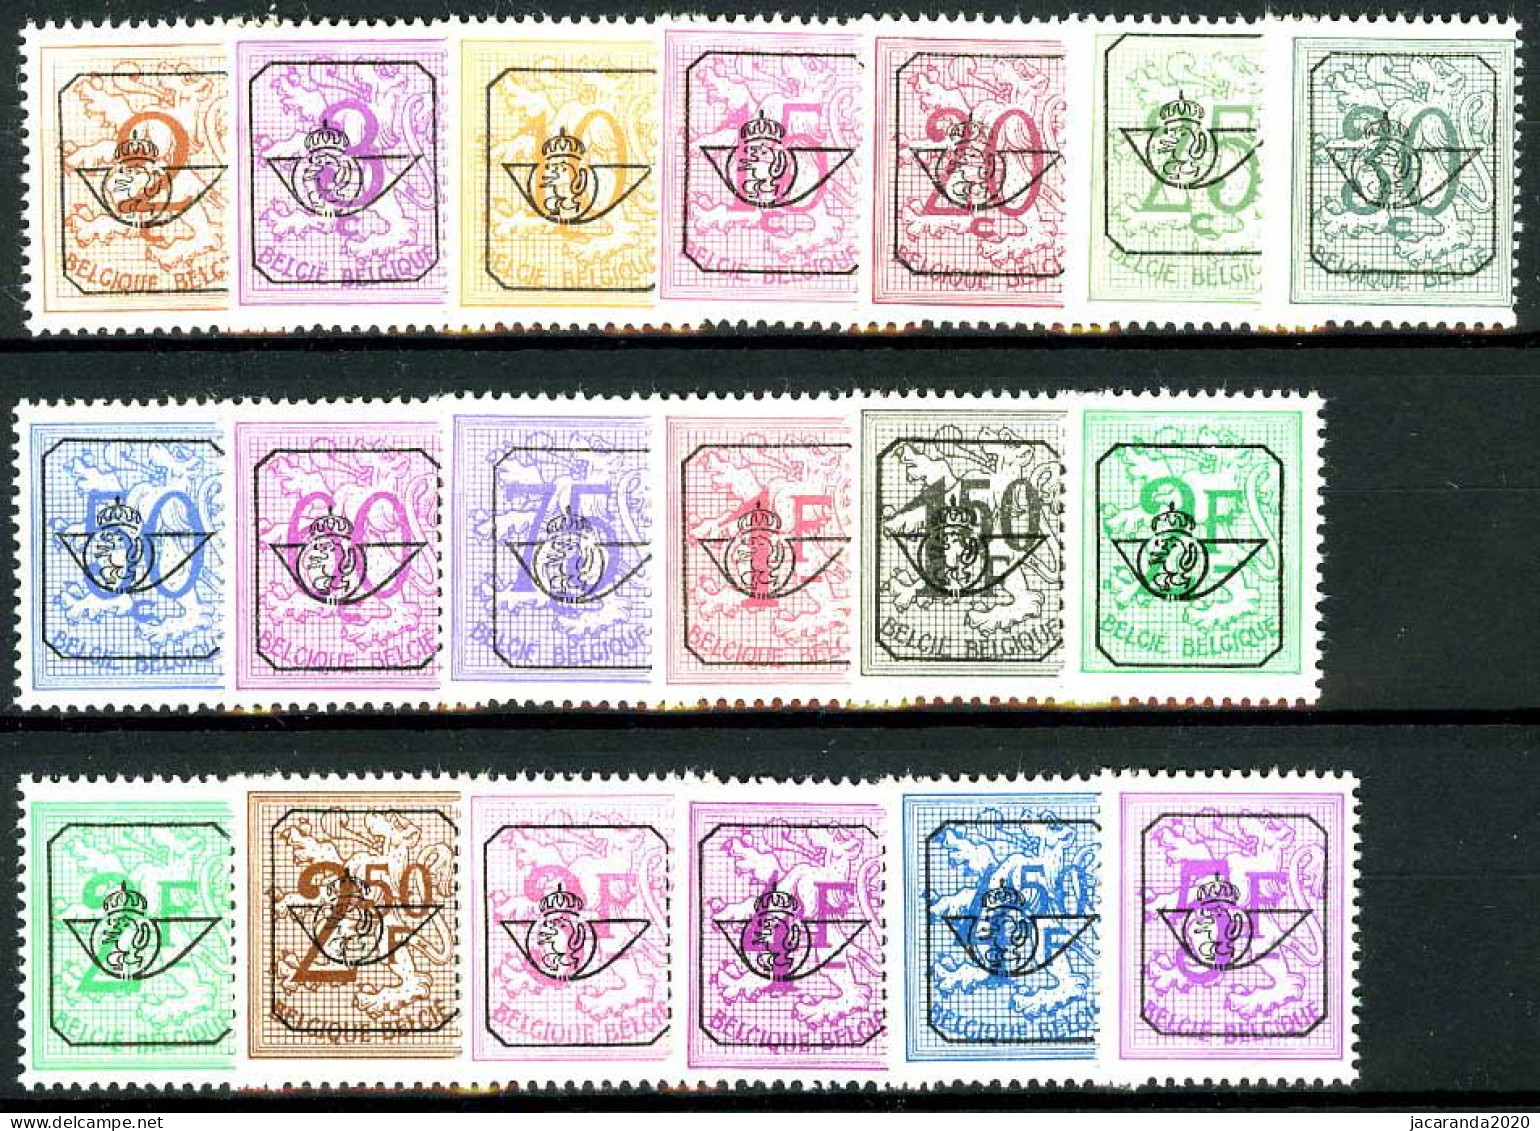 België PRE780/PRE798 ** - 1967 - Cijfer Op Heraldieke Leeuw - Chiffre Sur Lion Héraldique - Preo Reeks 60 - 19w. - P1+P2 - Typos 1951-80 (Chiffre Sur Lion)